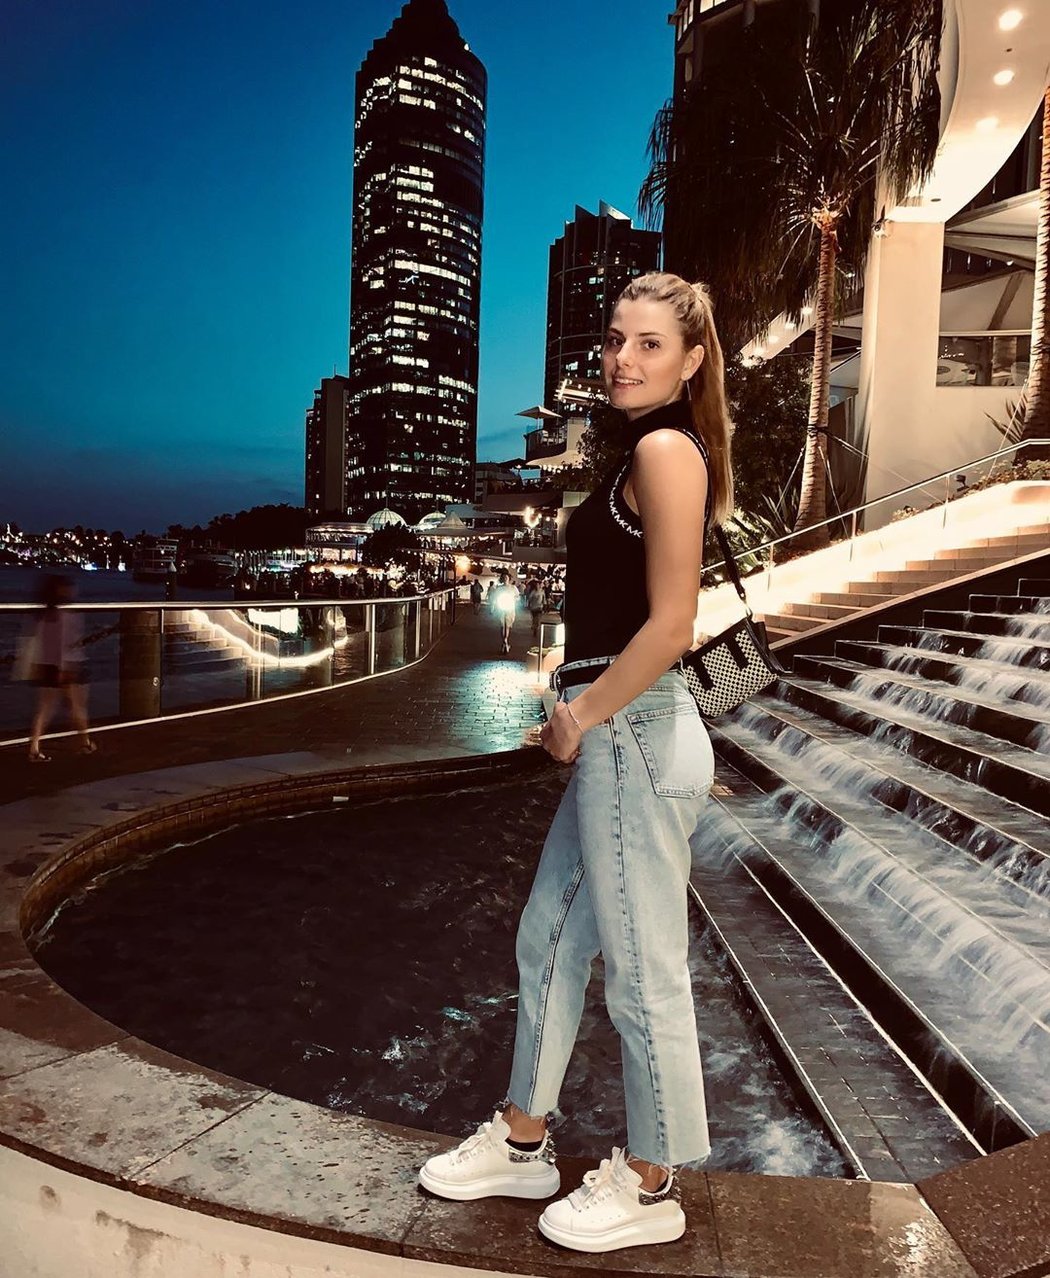 Ukrajinská tenistka Katarina Zavacká patří mezi vycházející hvězdičky WTA